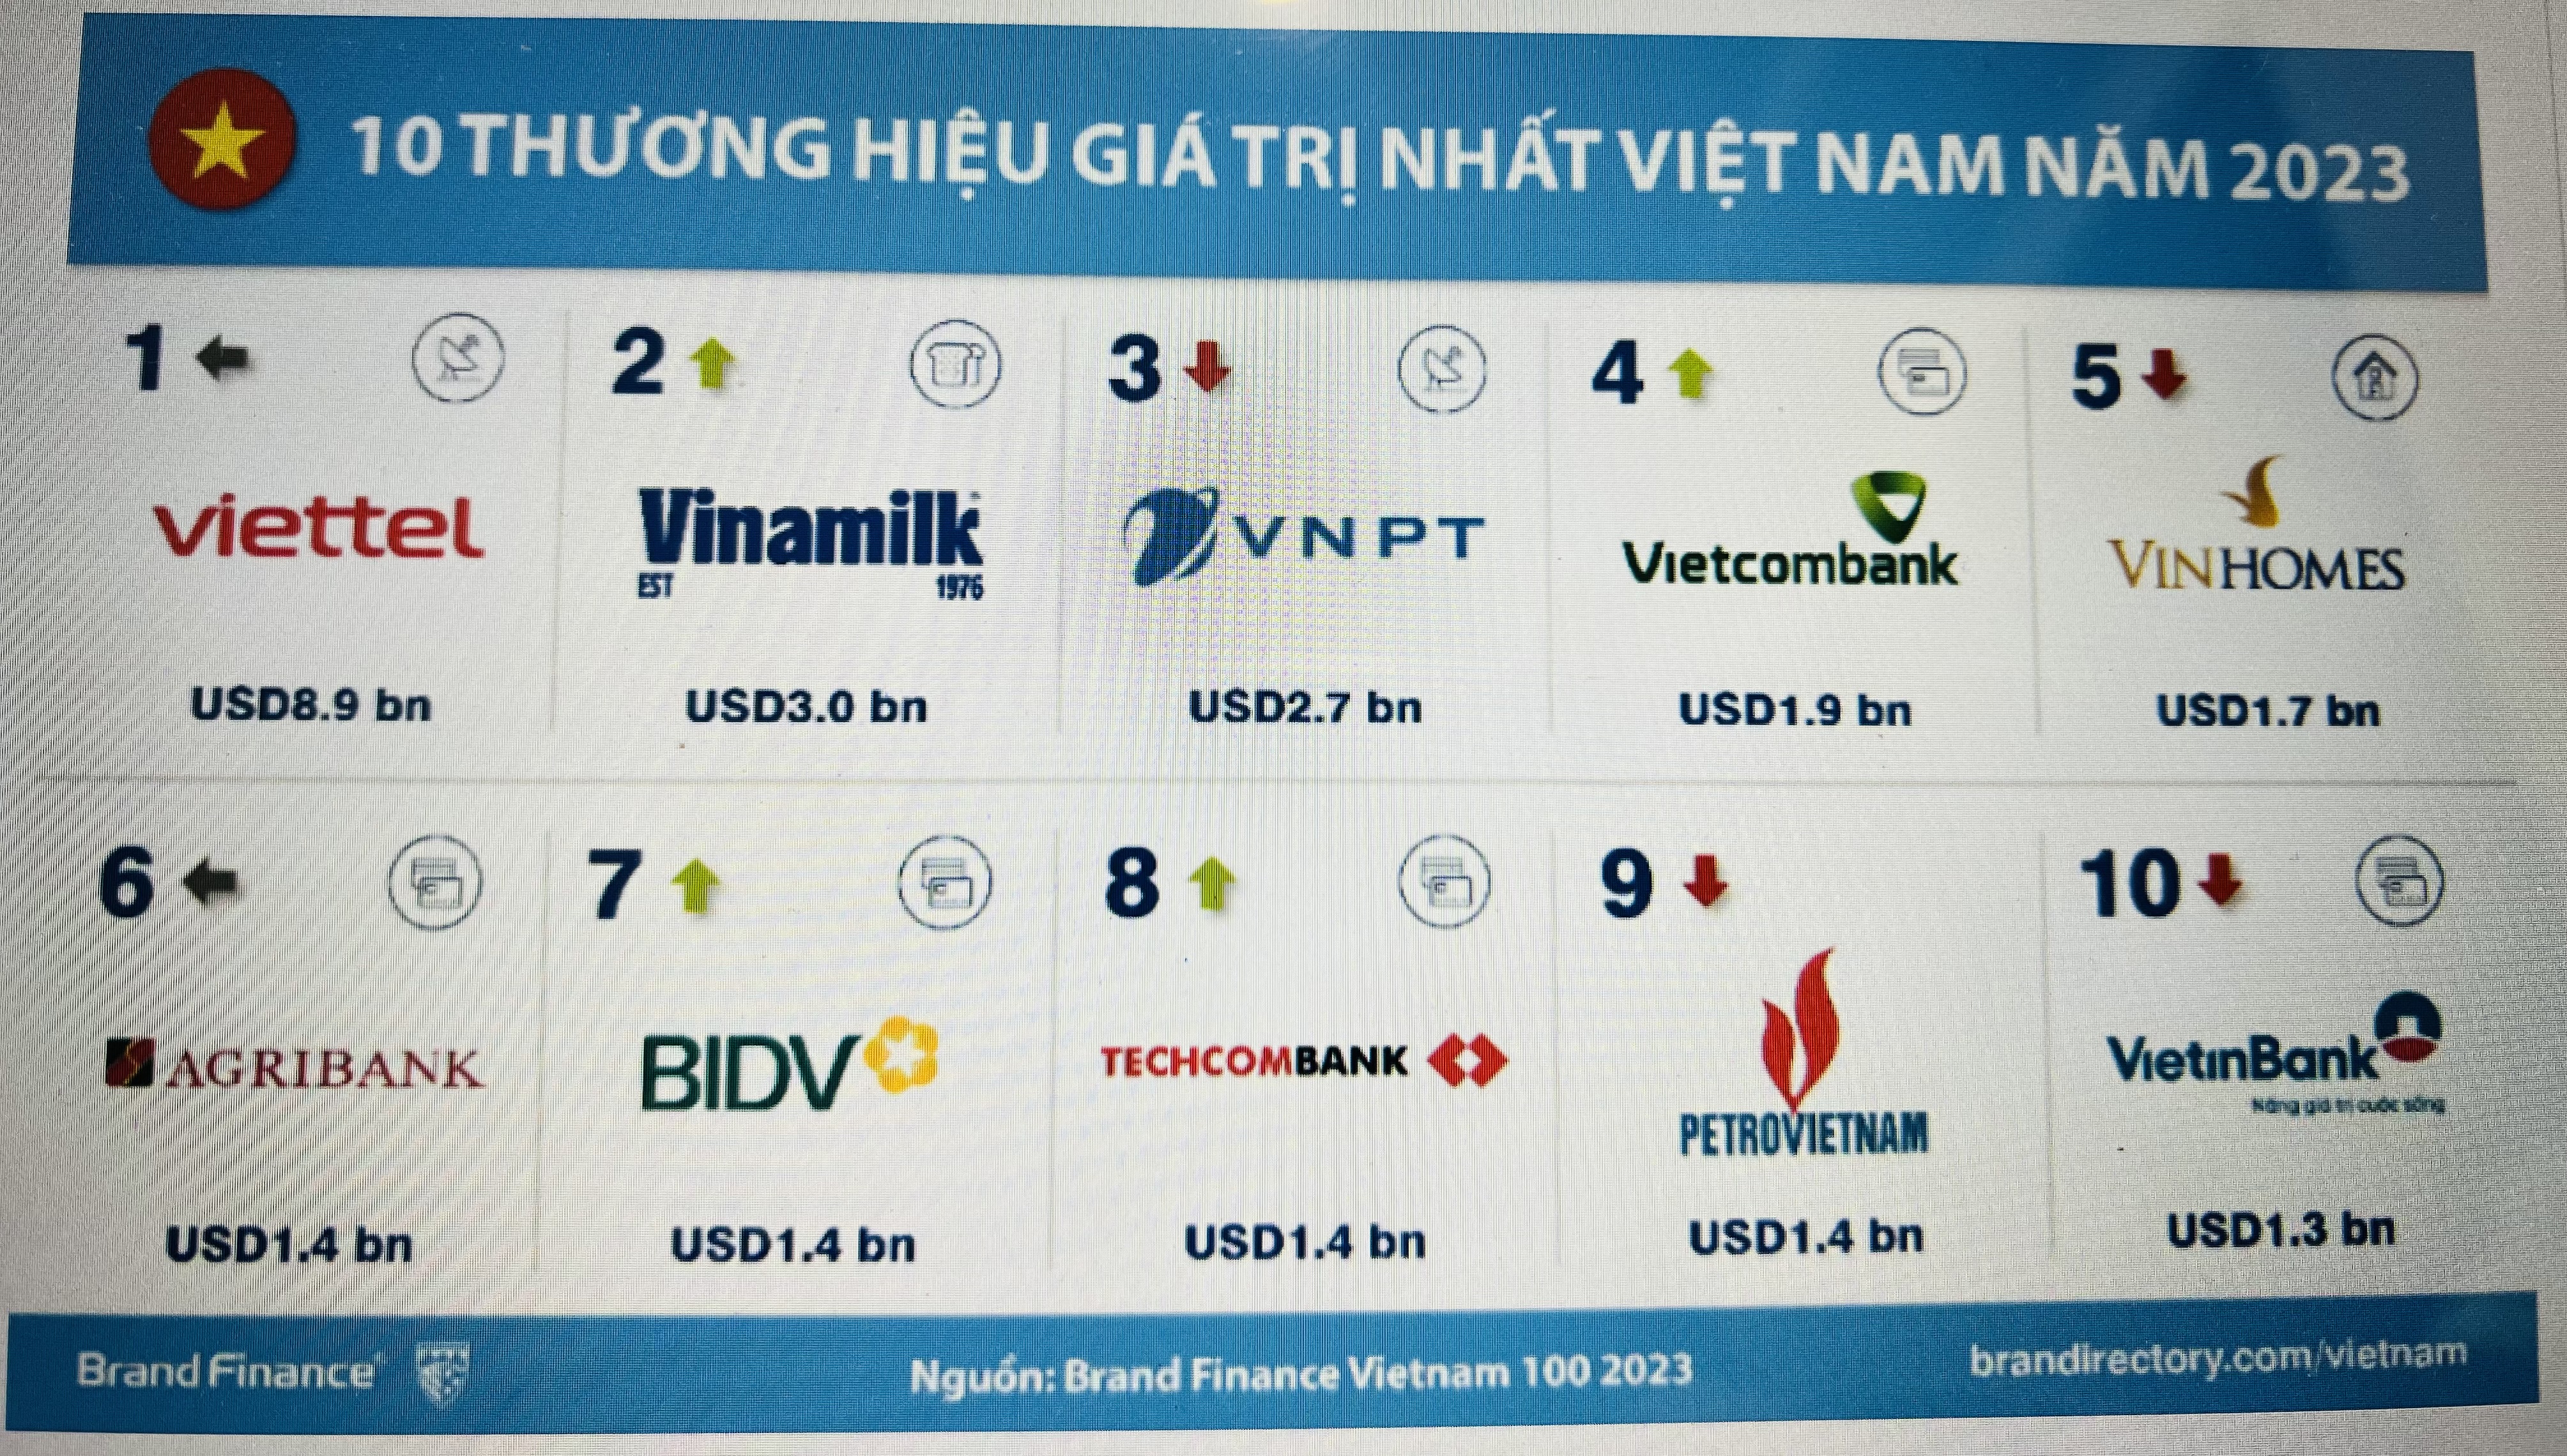 10 thương hiệu giá trị nhất Việt Nam năm 2023.